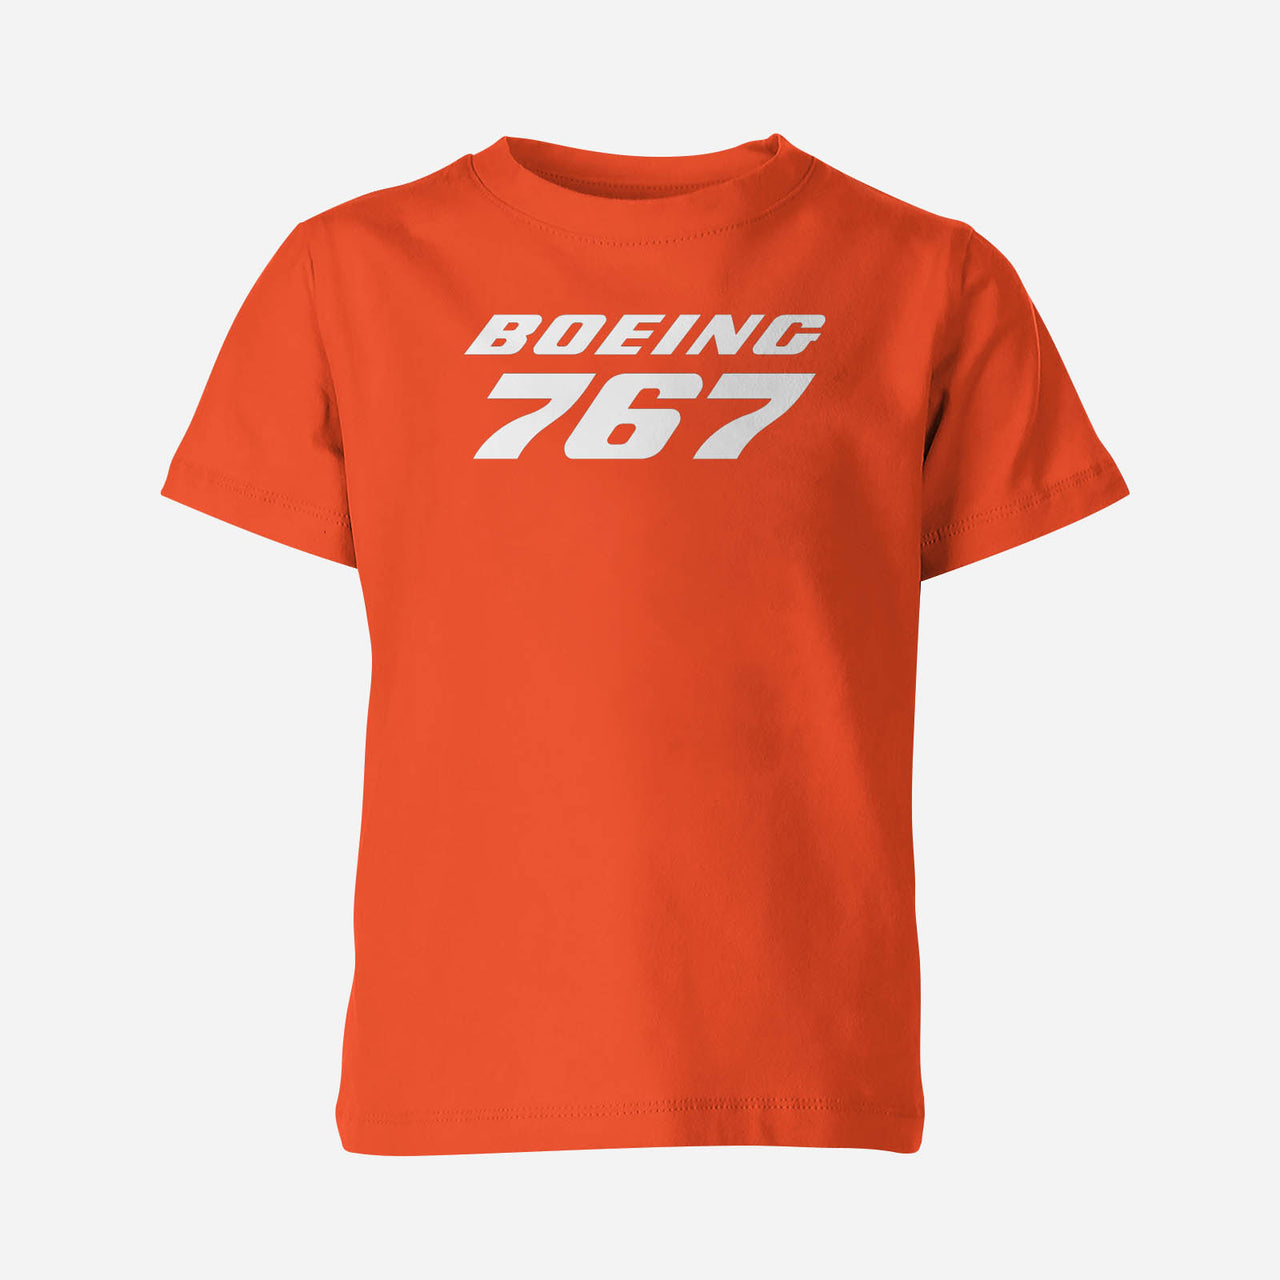 Boeing 767 & Text Designed Children T-Shirts